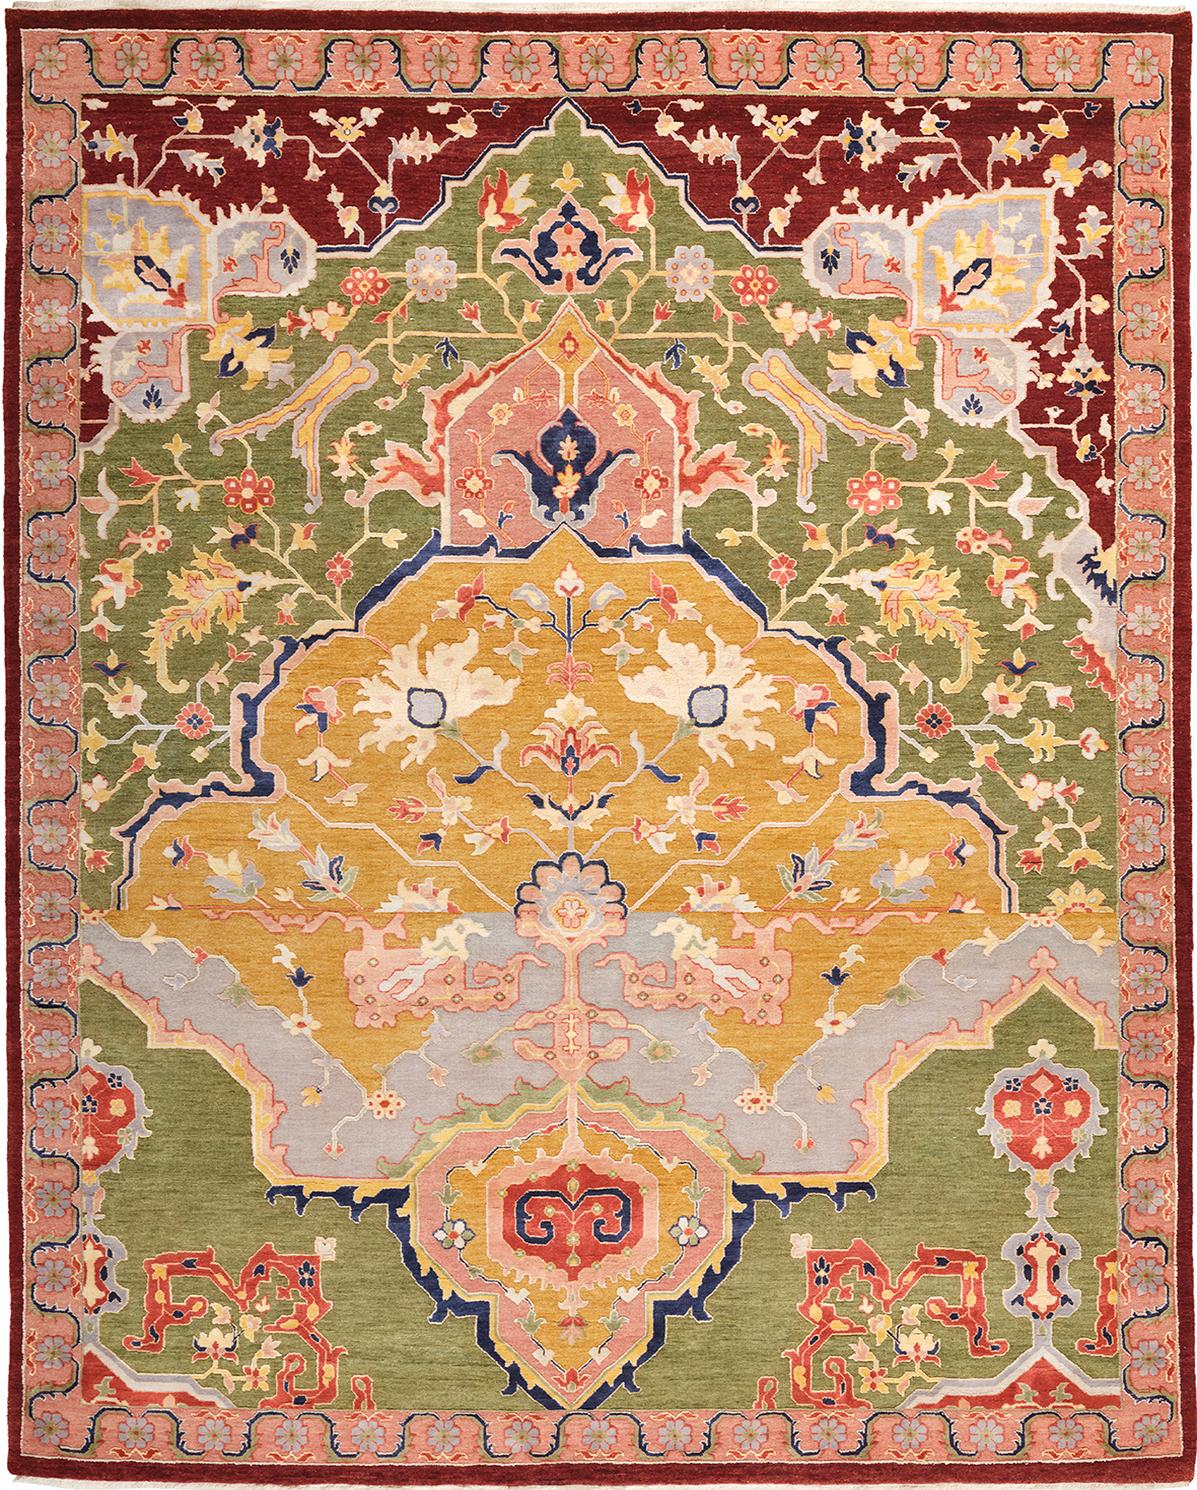 Heriz-Teppiche sind wegen ihrer Vielseitigkeit beliebt. Ihre Geometrie ergänzt die moderne
Die warmen Farben und die künstlerische Tiefe der Möbelstücke werten Antiquitäten aller Art auf.
Ihre Farbenpracht und ihre Designstärke machen sie zu einer